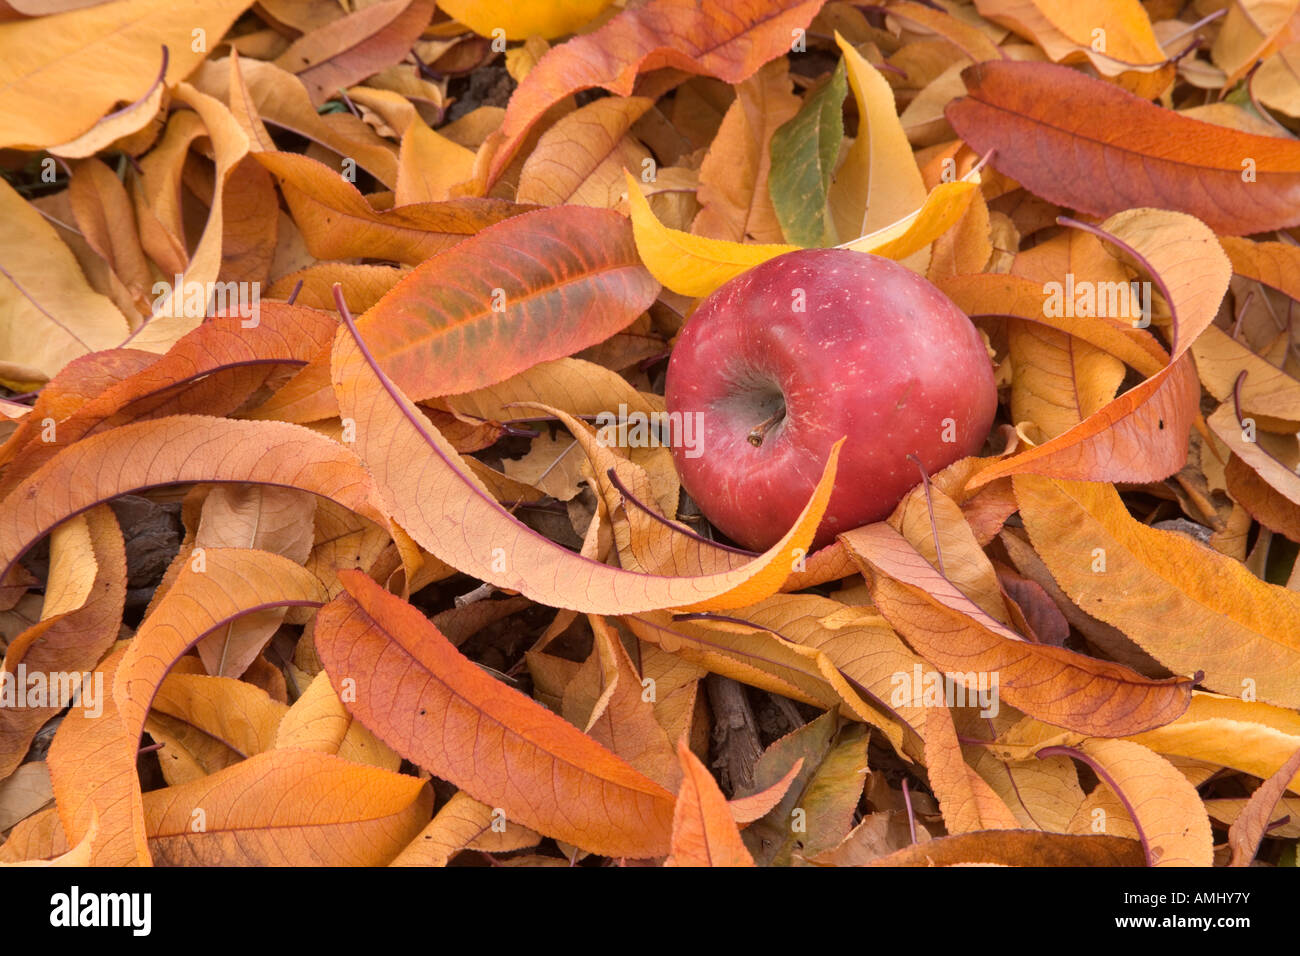 Fallen apple in autumn foliage. Stock Photo